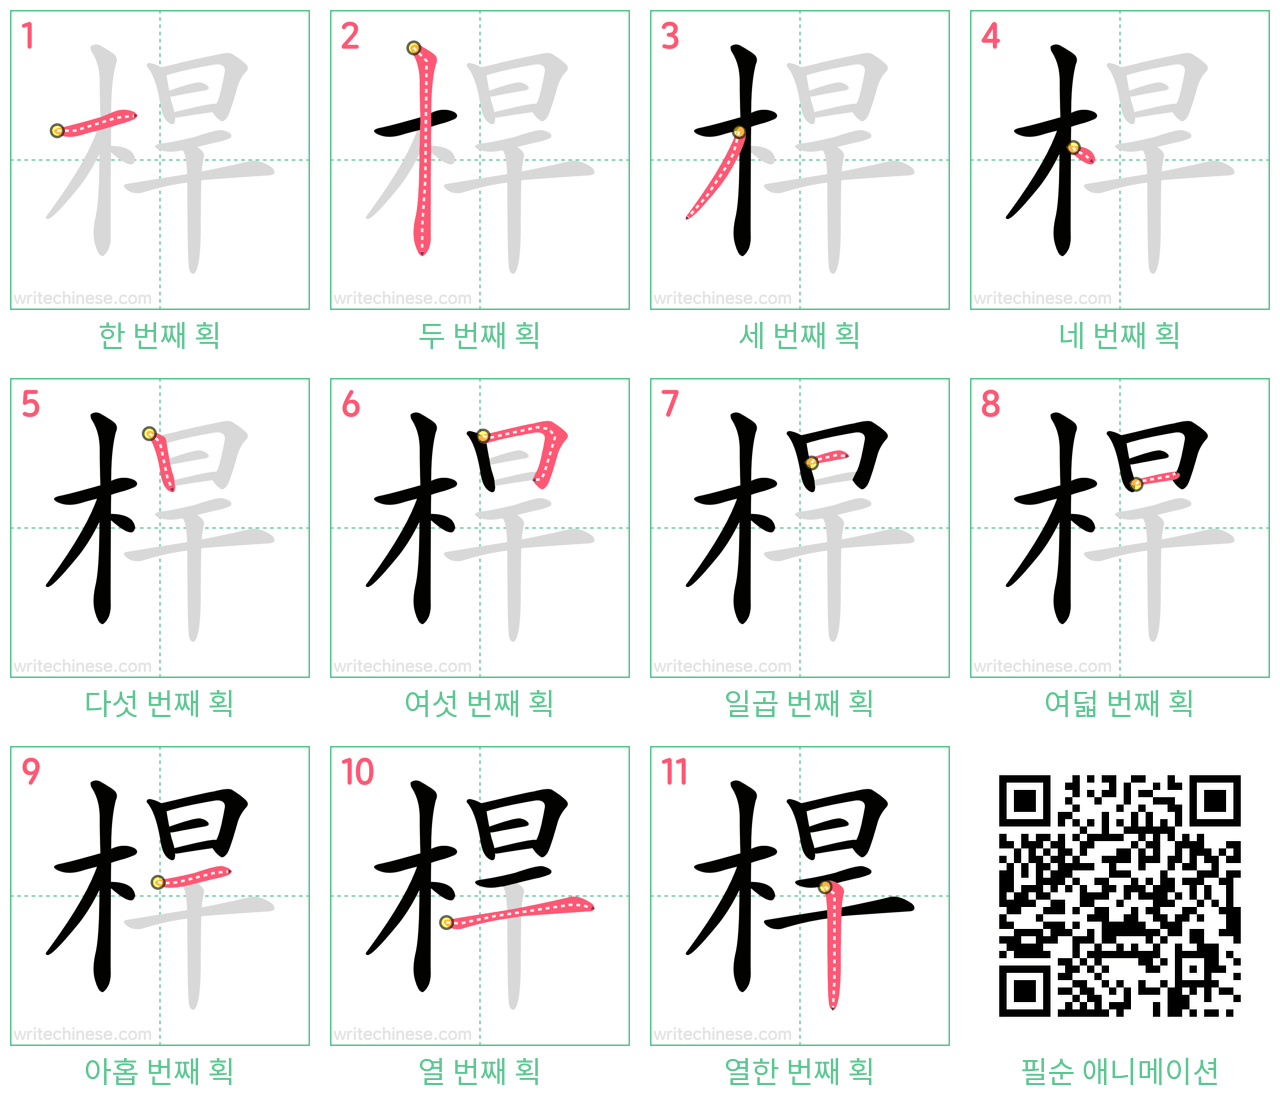 桿 step-by-step stroke order diagrams